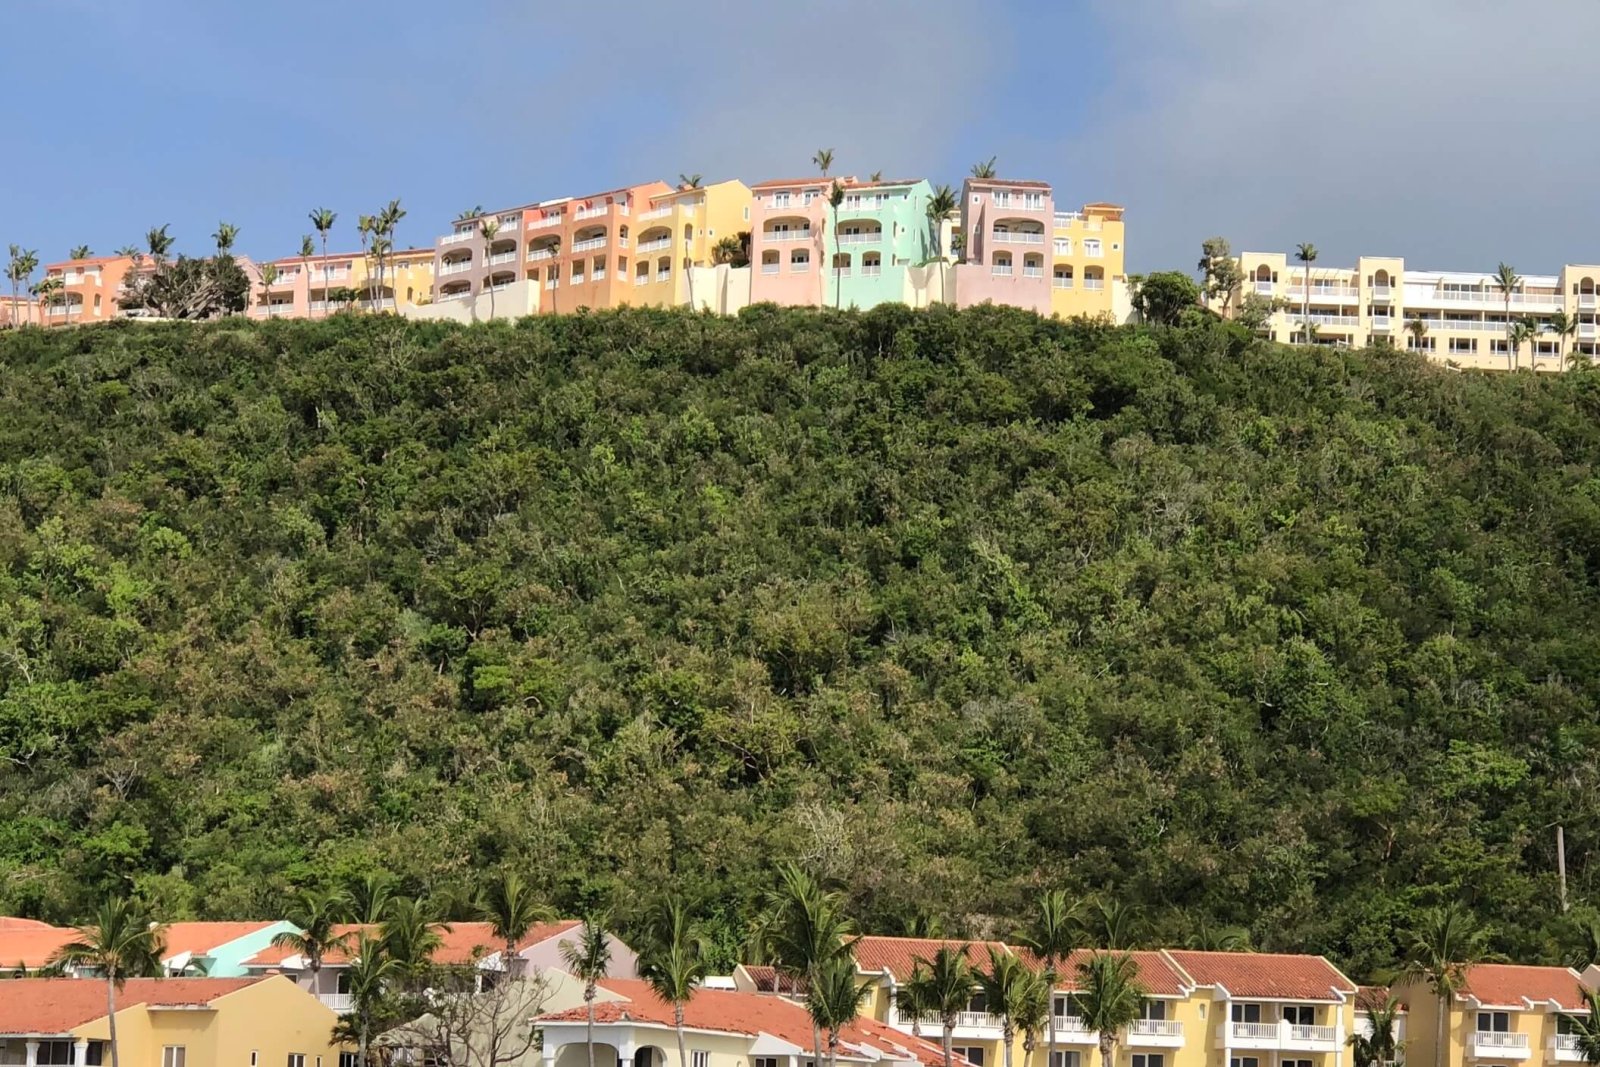 View of  La Casitas Village at El Conquistador Resort.